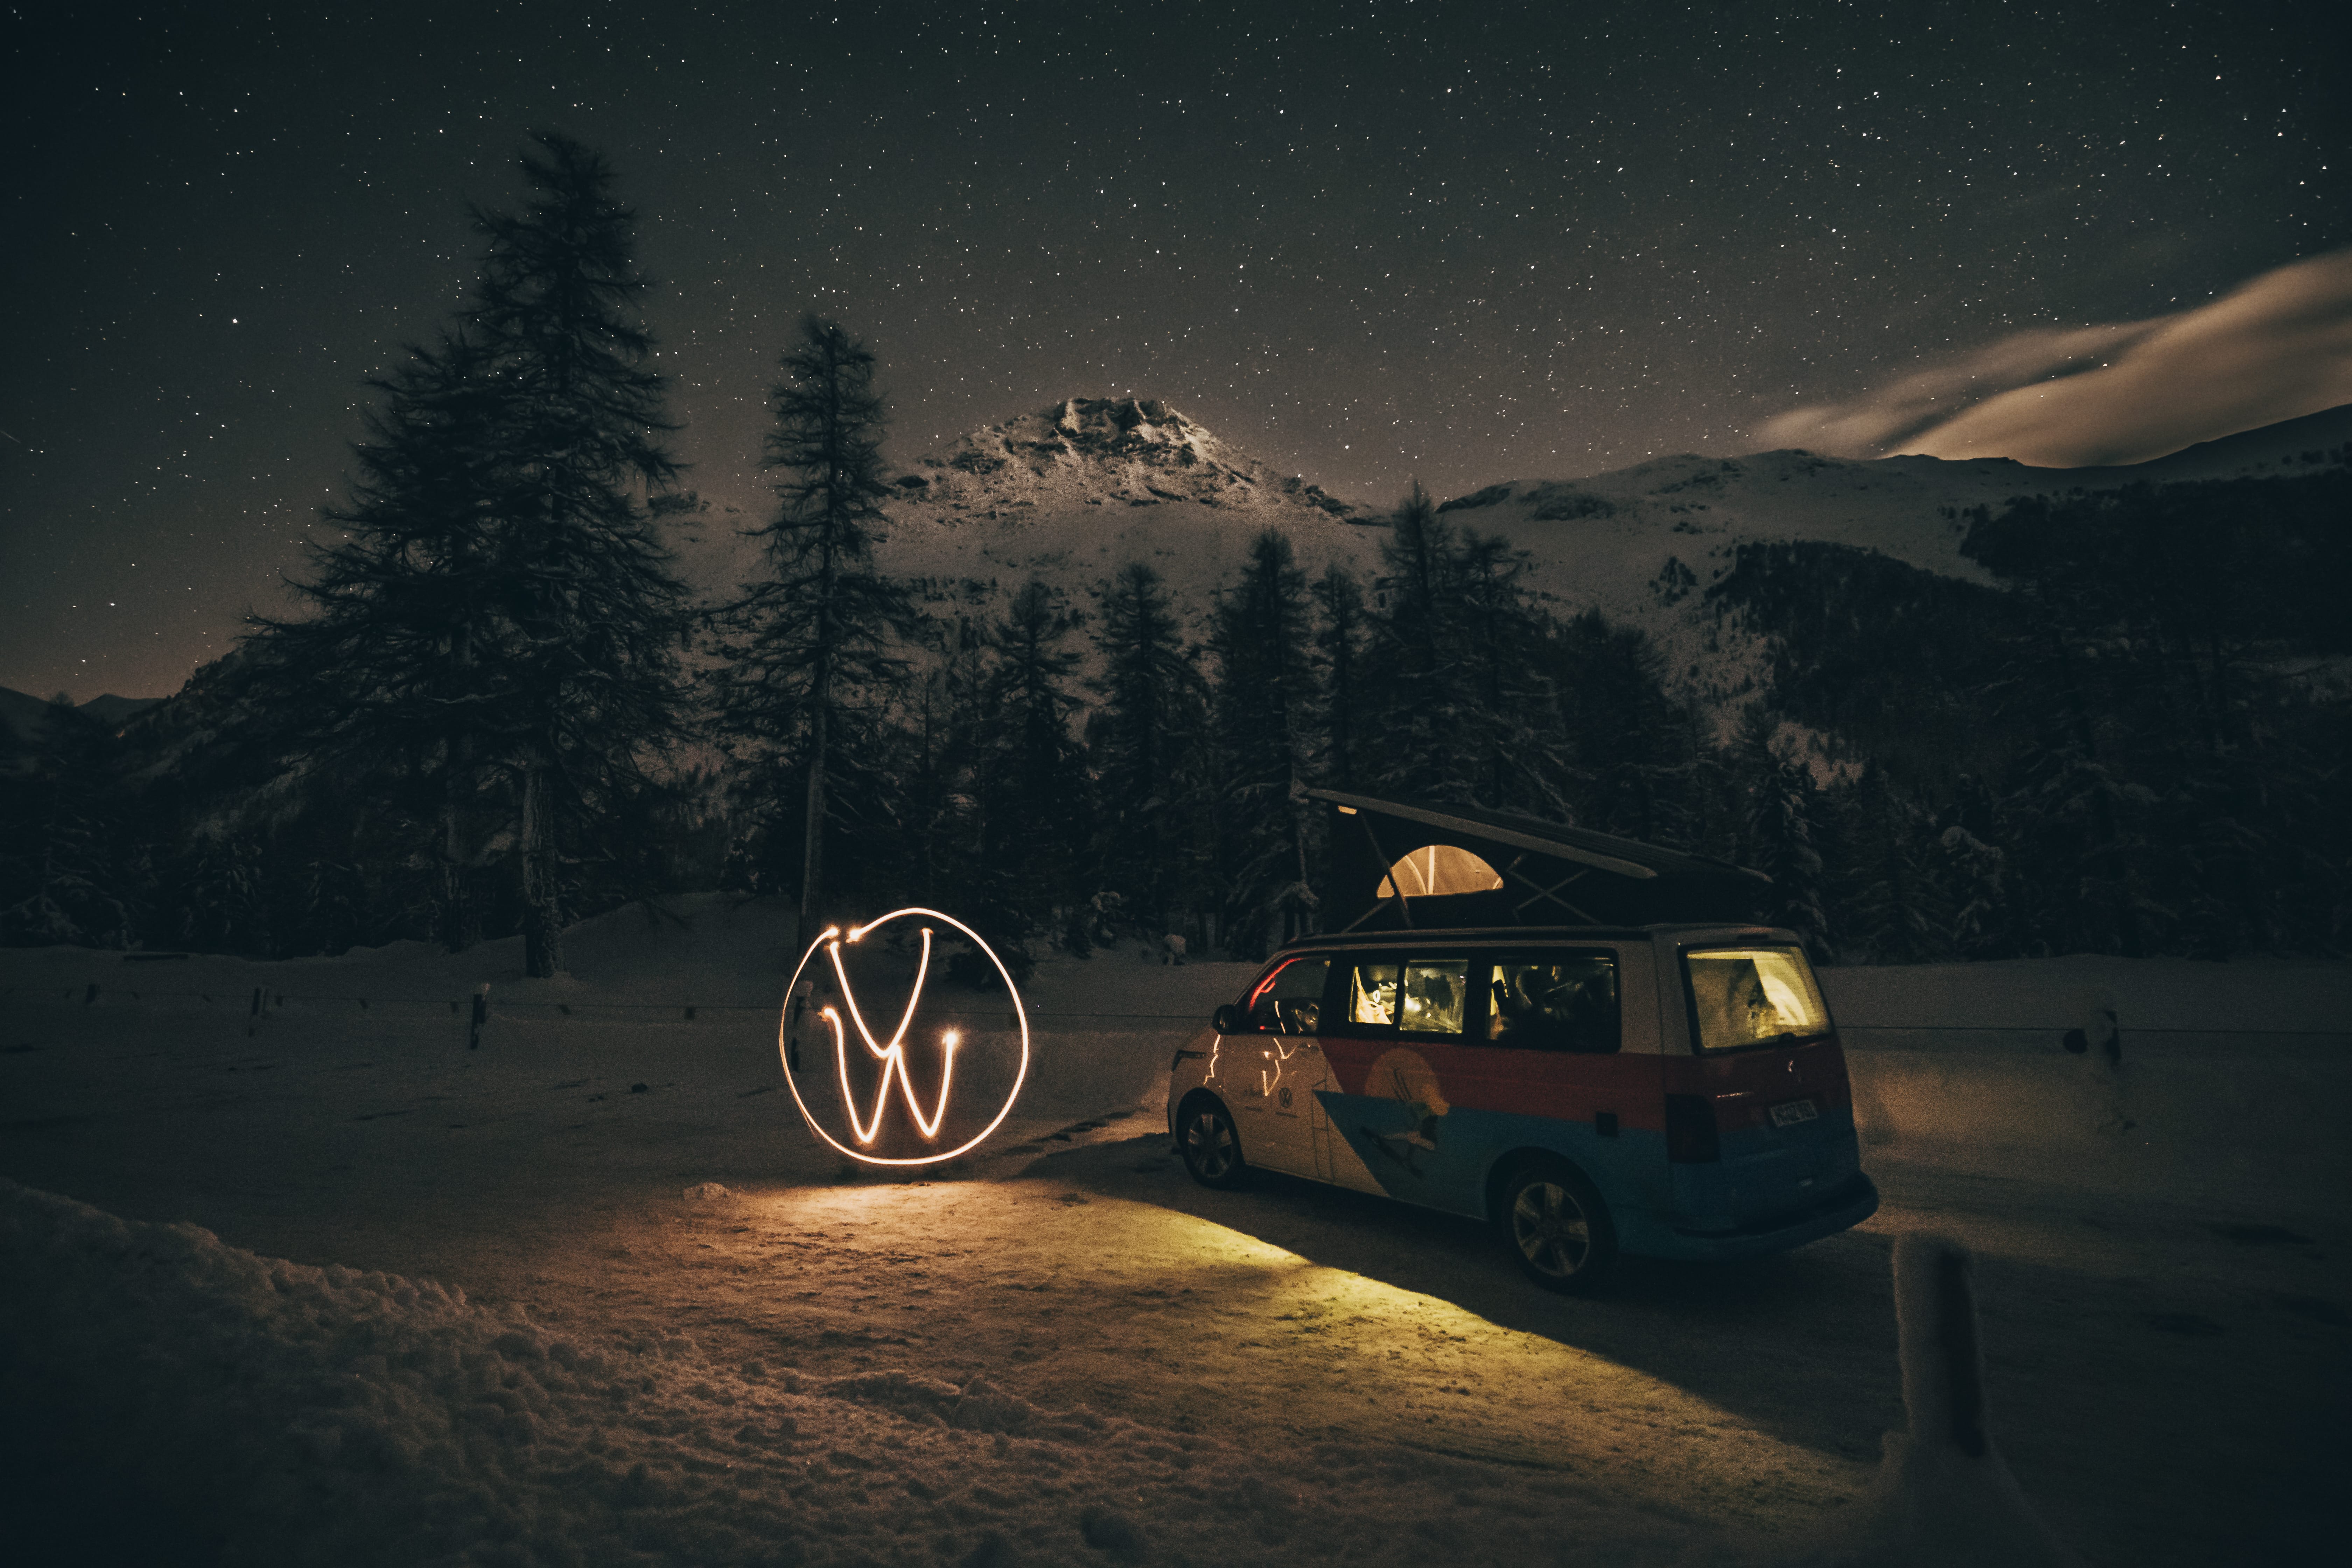 Volkswagen Schweiz